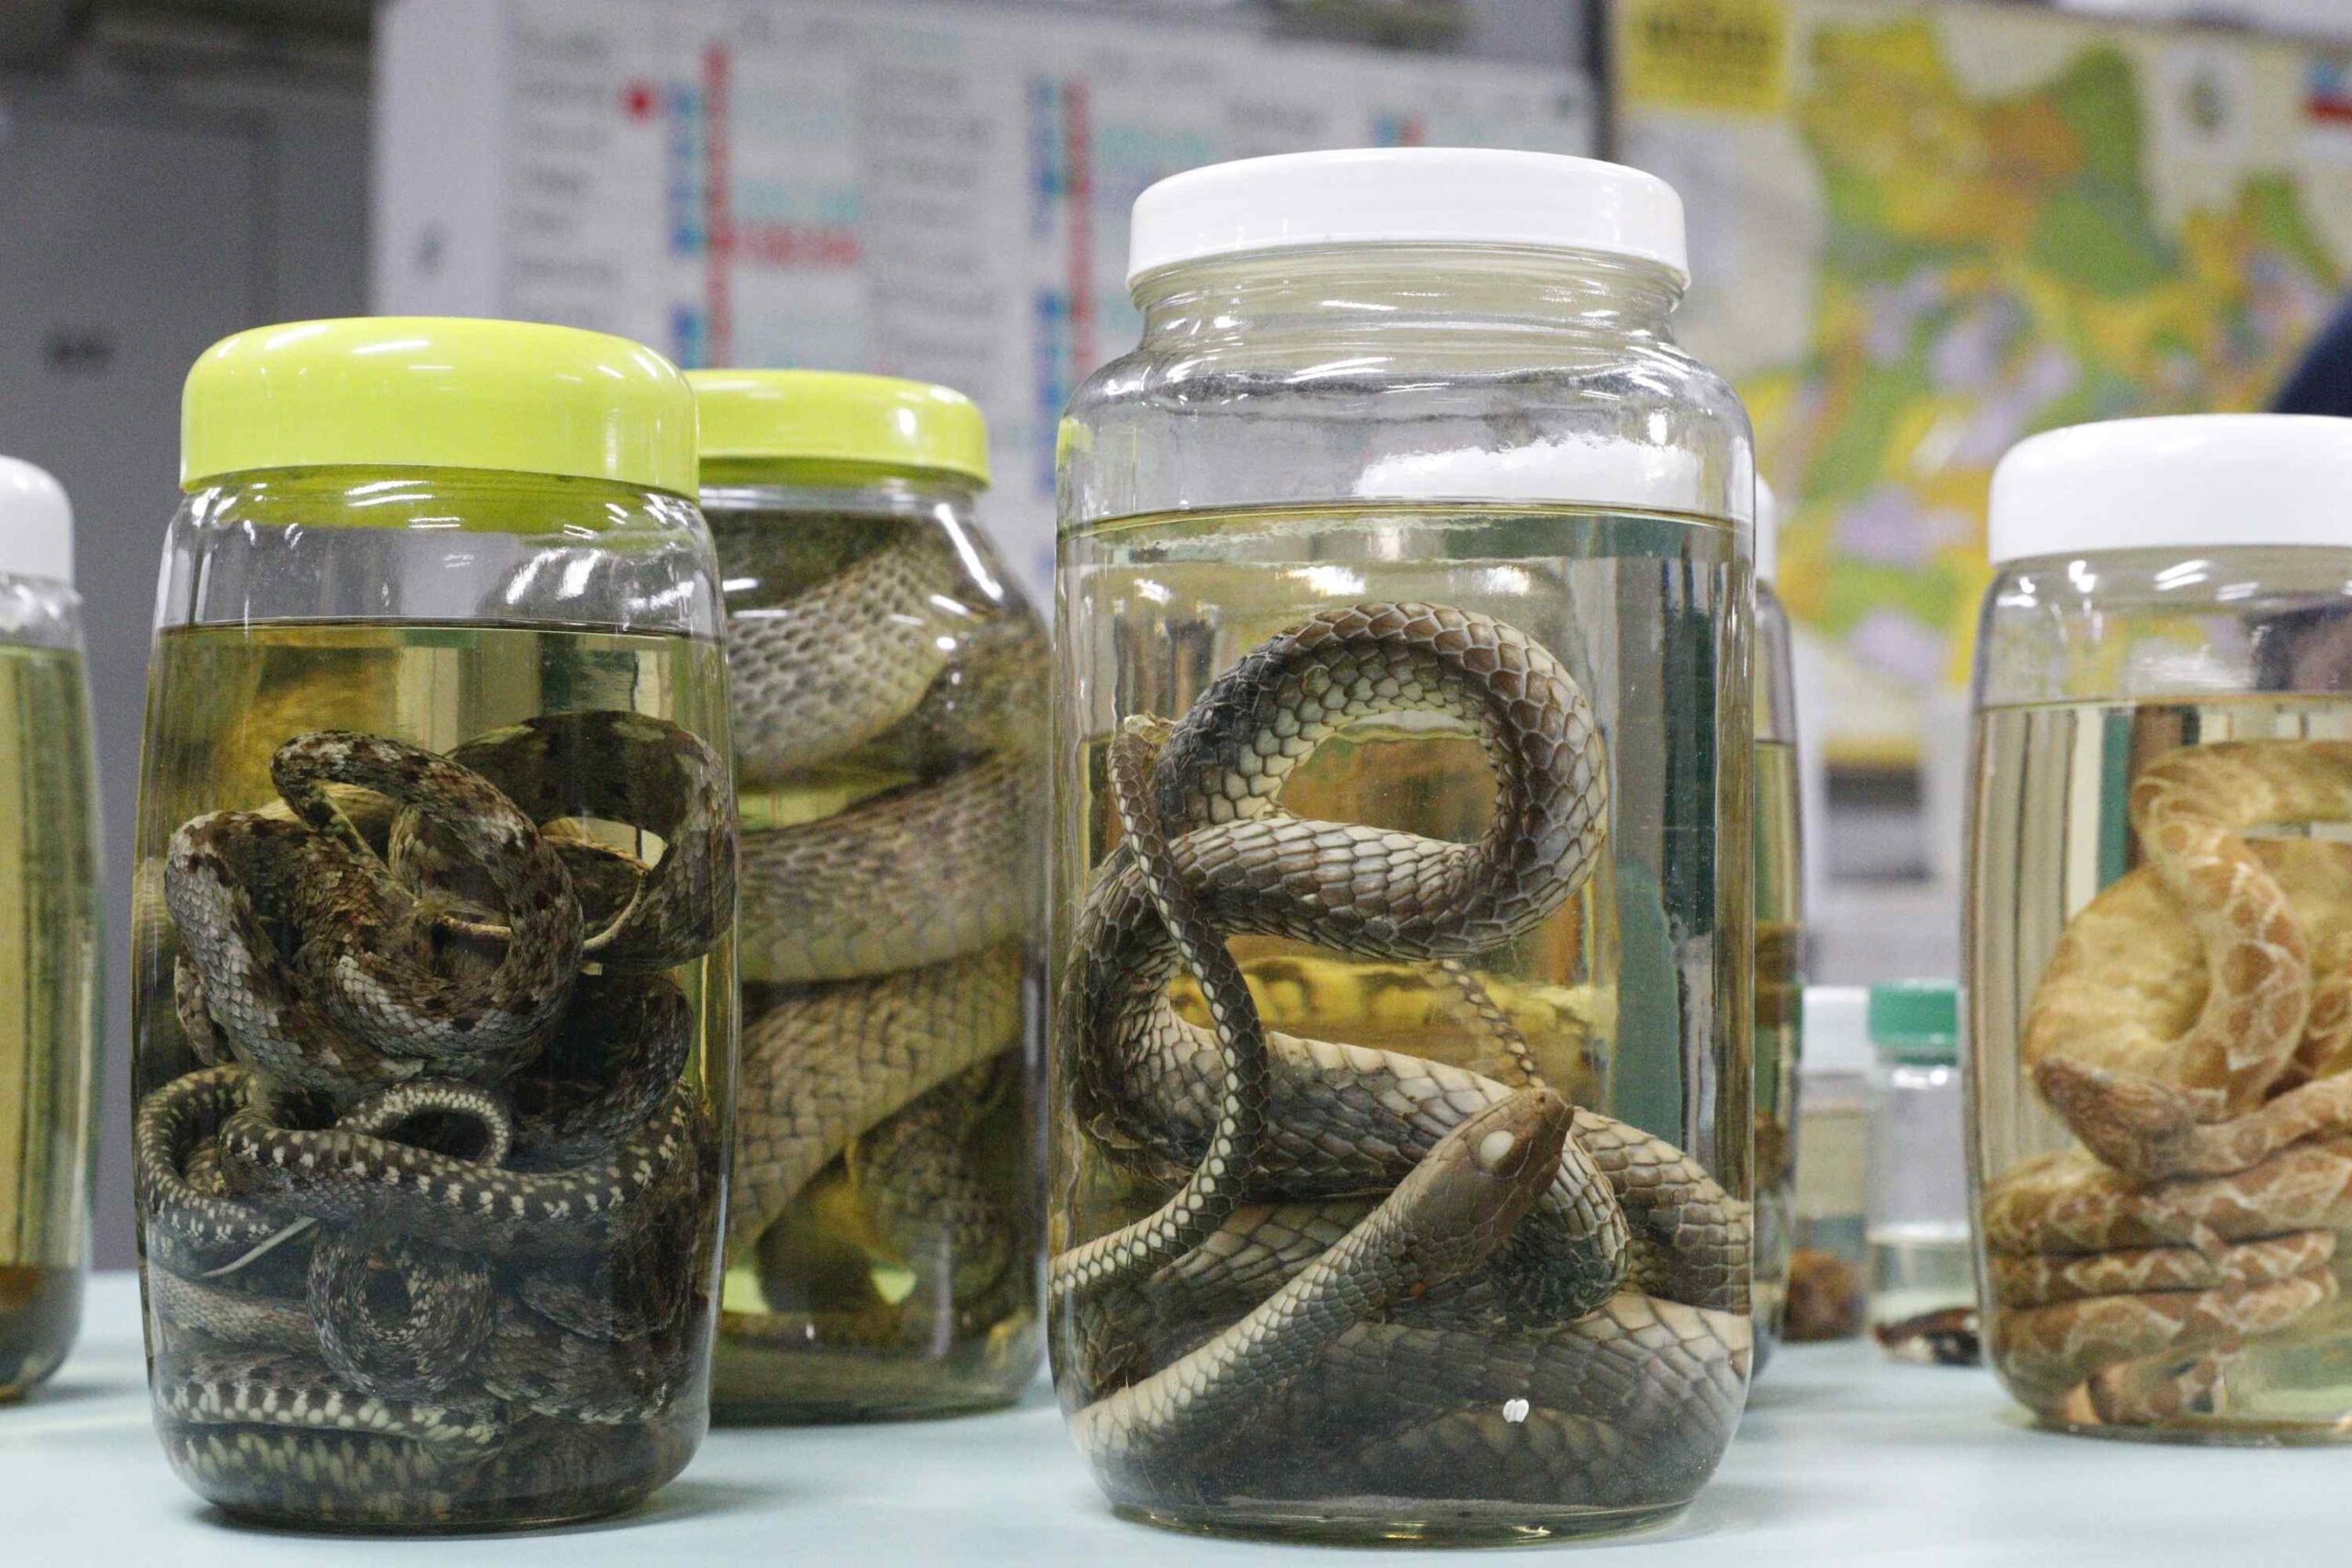 Serpentes, escorpiões e aranhas lideram acidentes com animais peçonhentos no Amazonas